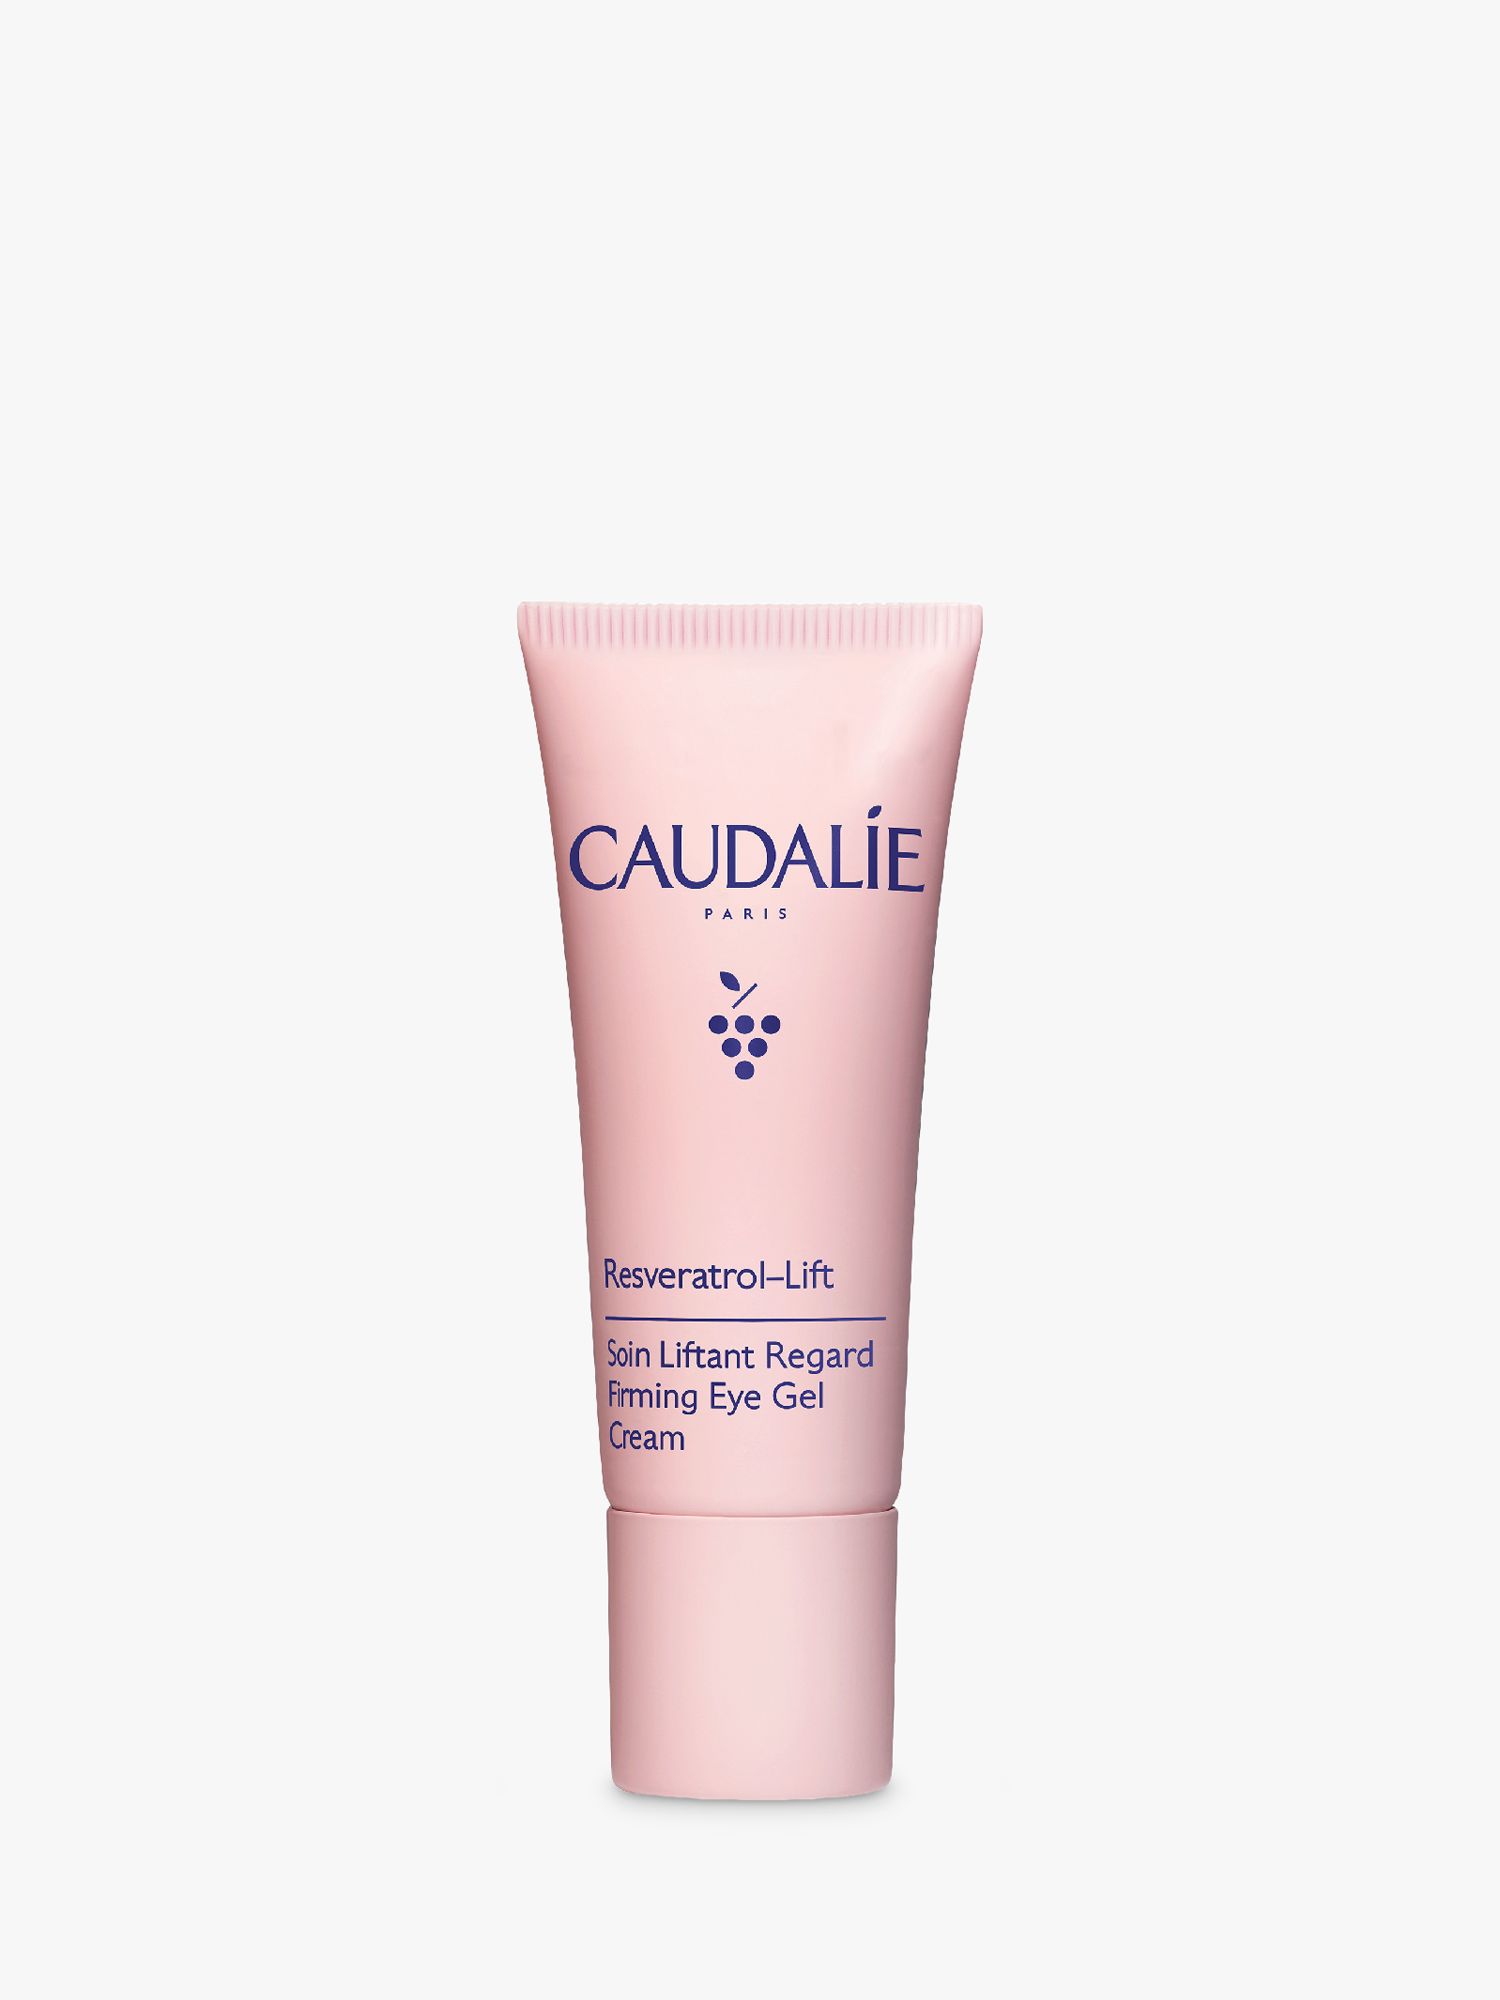 Caudalie Resveratrol-Lift Firming Eye Gel Cream, 15ml 1